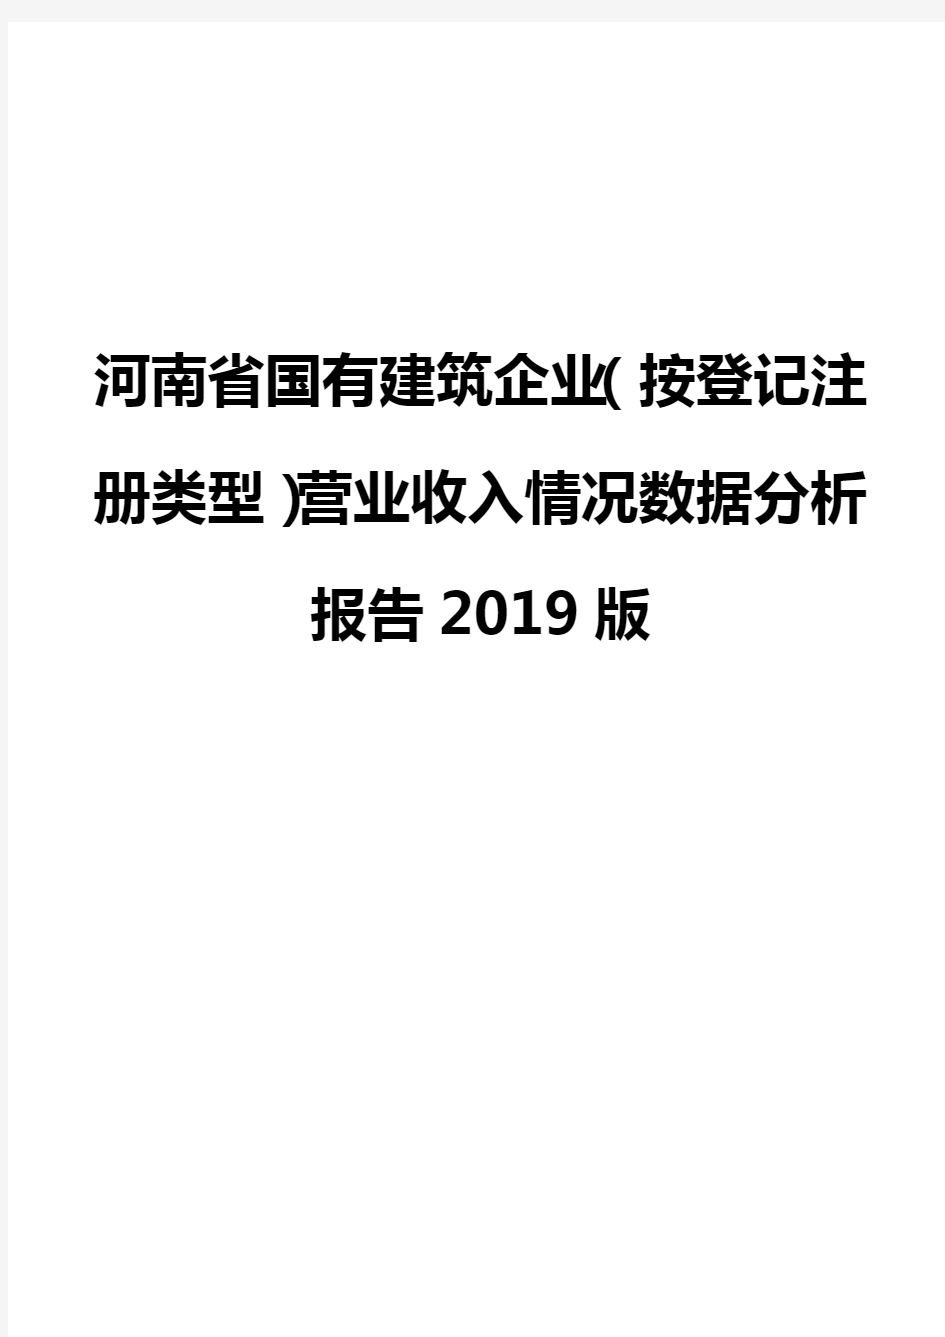 河南省国有建筑企业(按登记注册类型)营业收入情况数据分析报告2019版